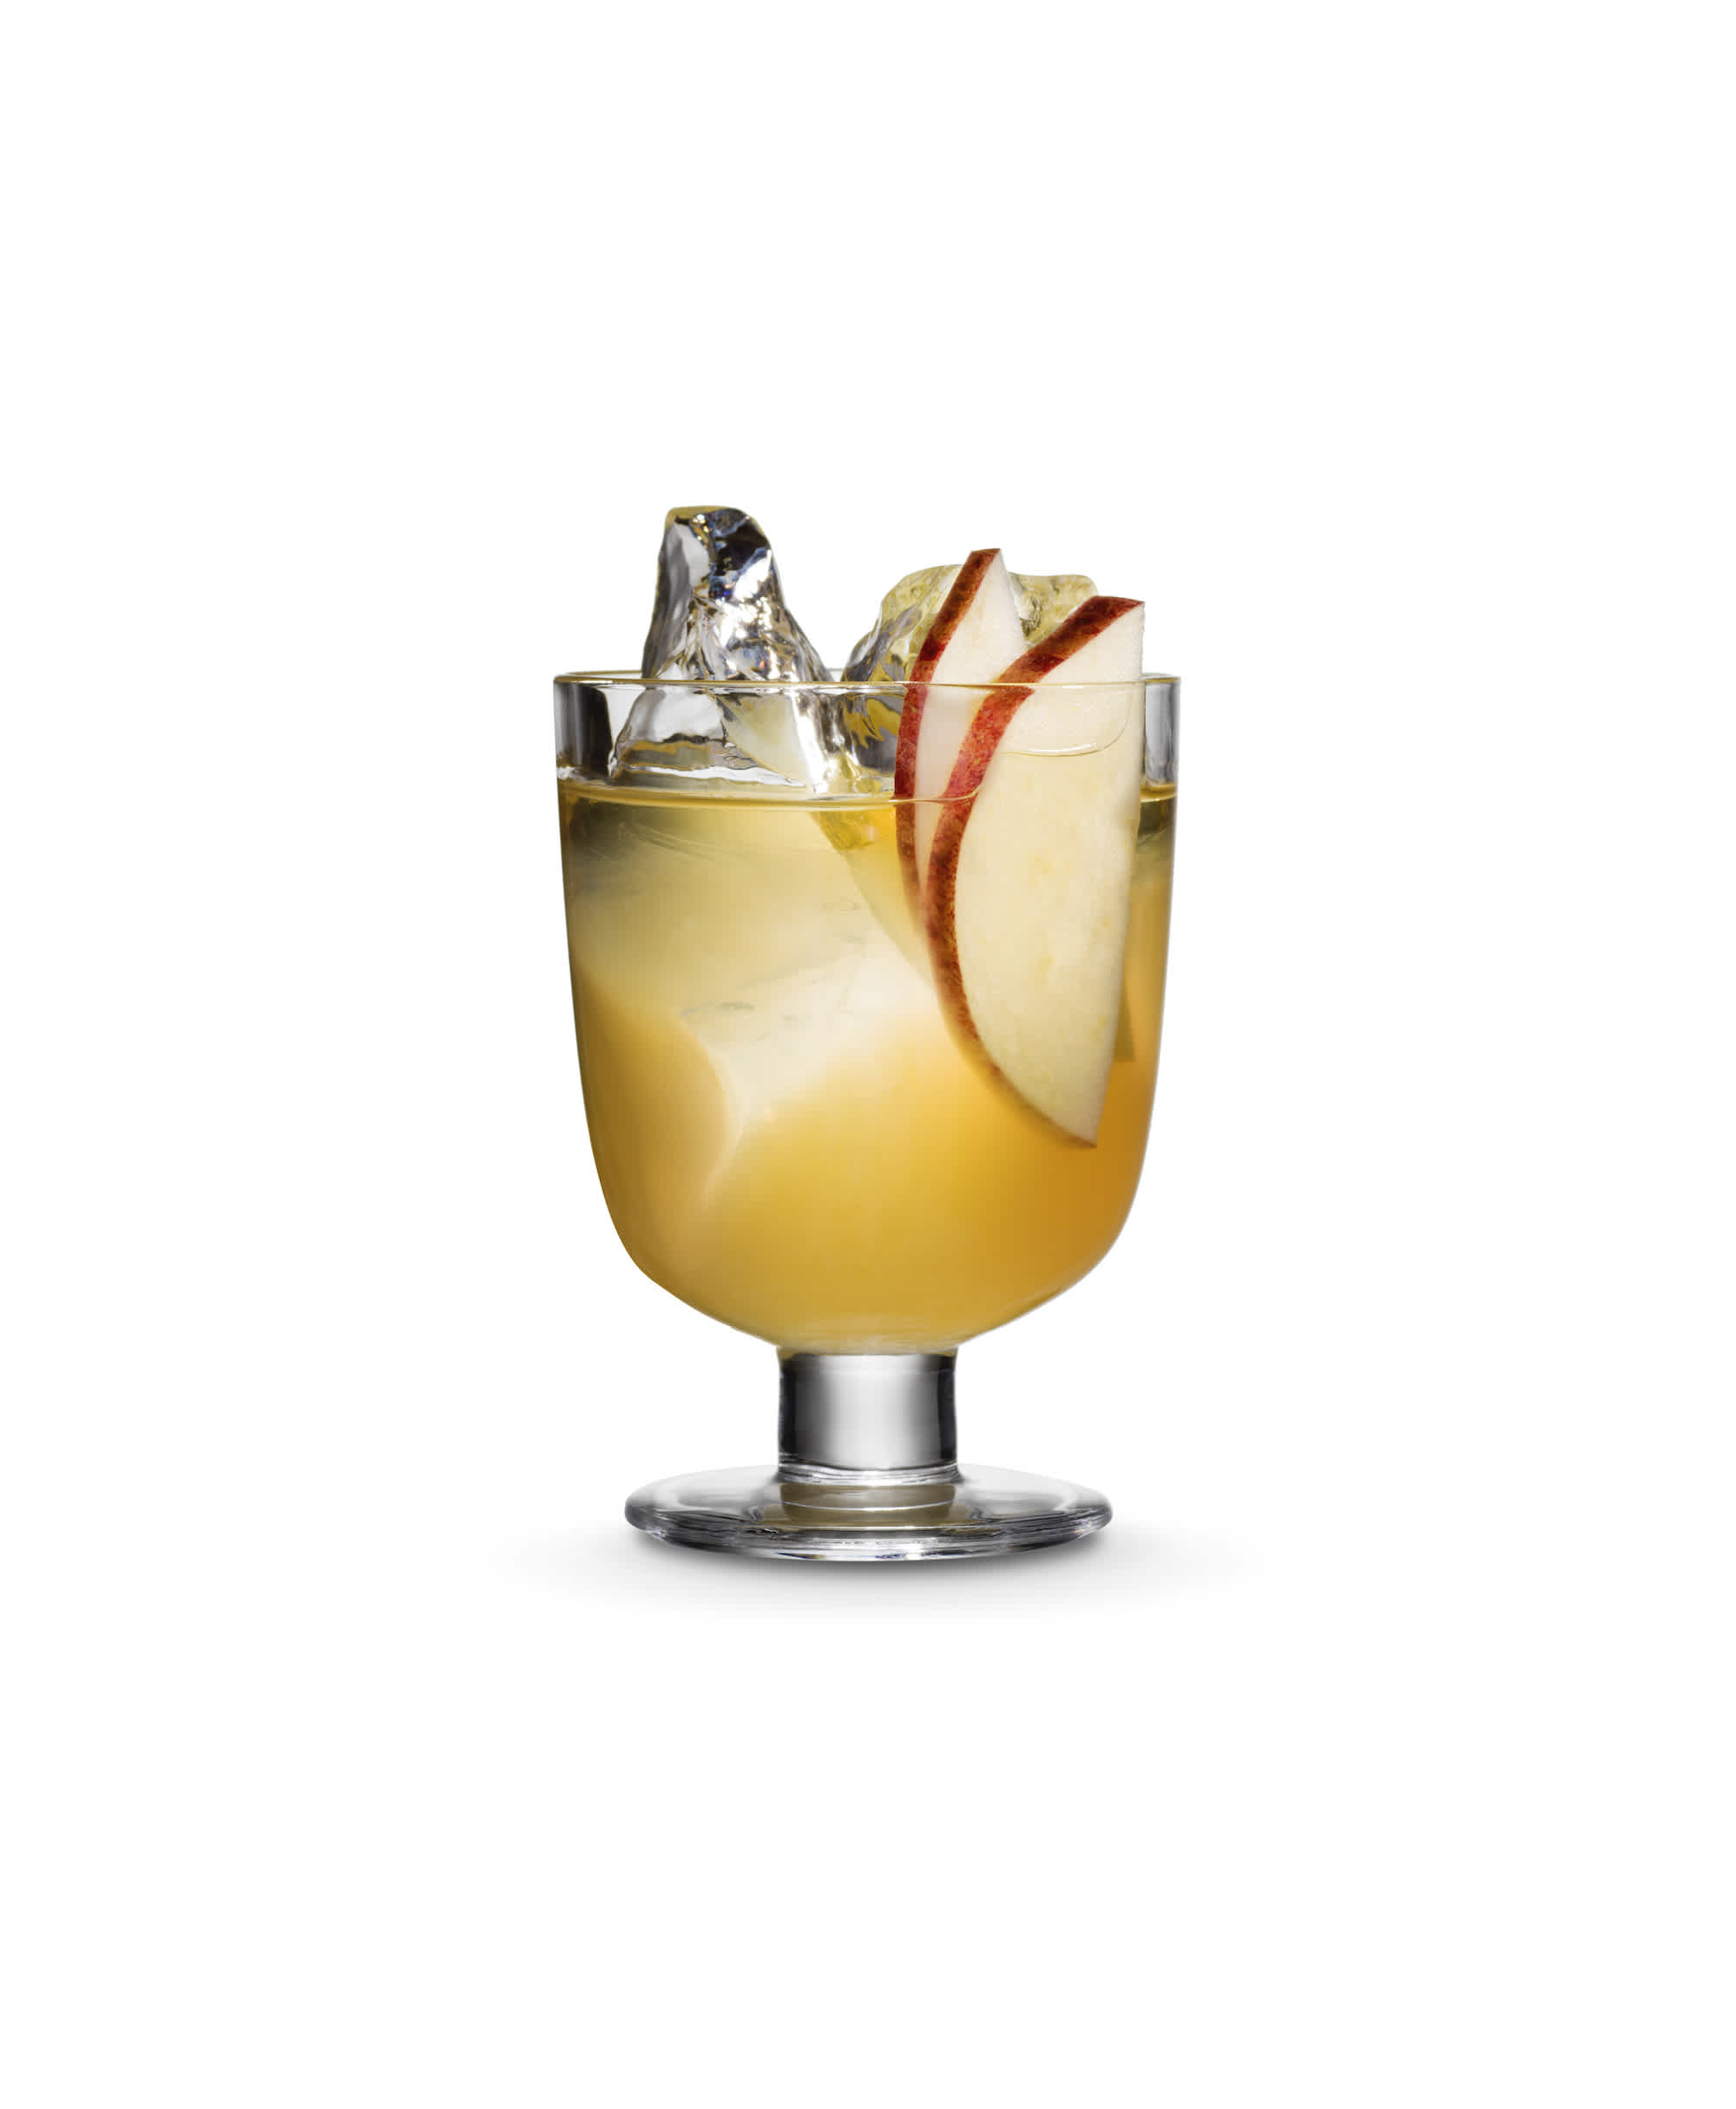 Gin & juice drinkki lasissa. Tynnyrikypsytetty gini ja omenamehu koristellaan tuoreella omenaviipaleella.